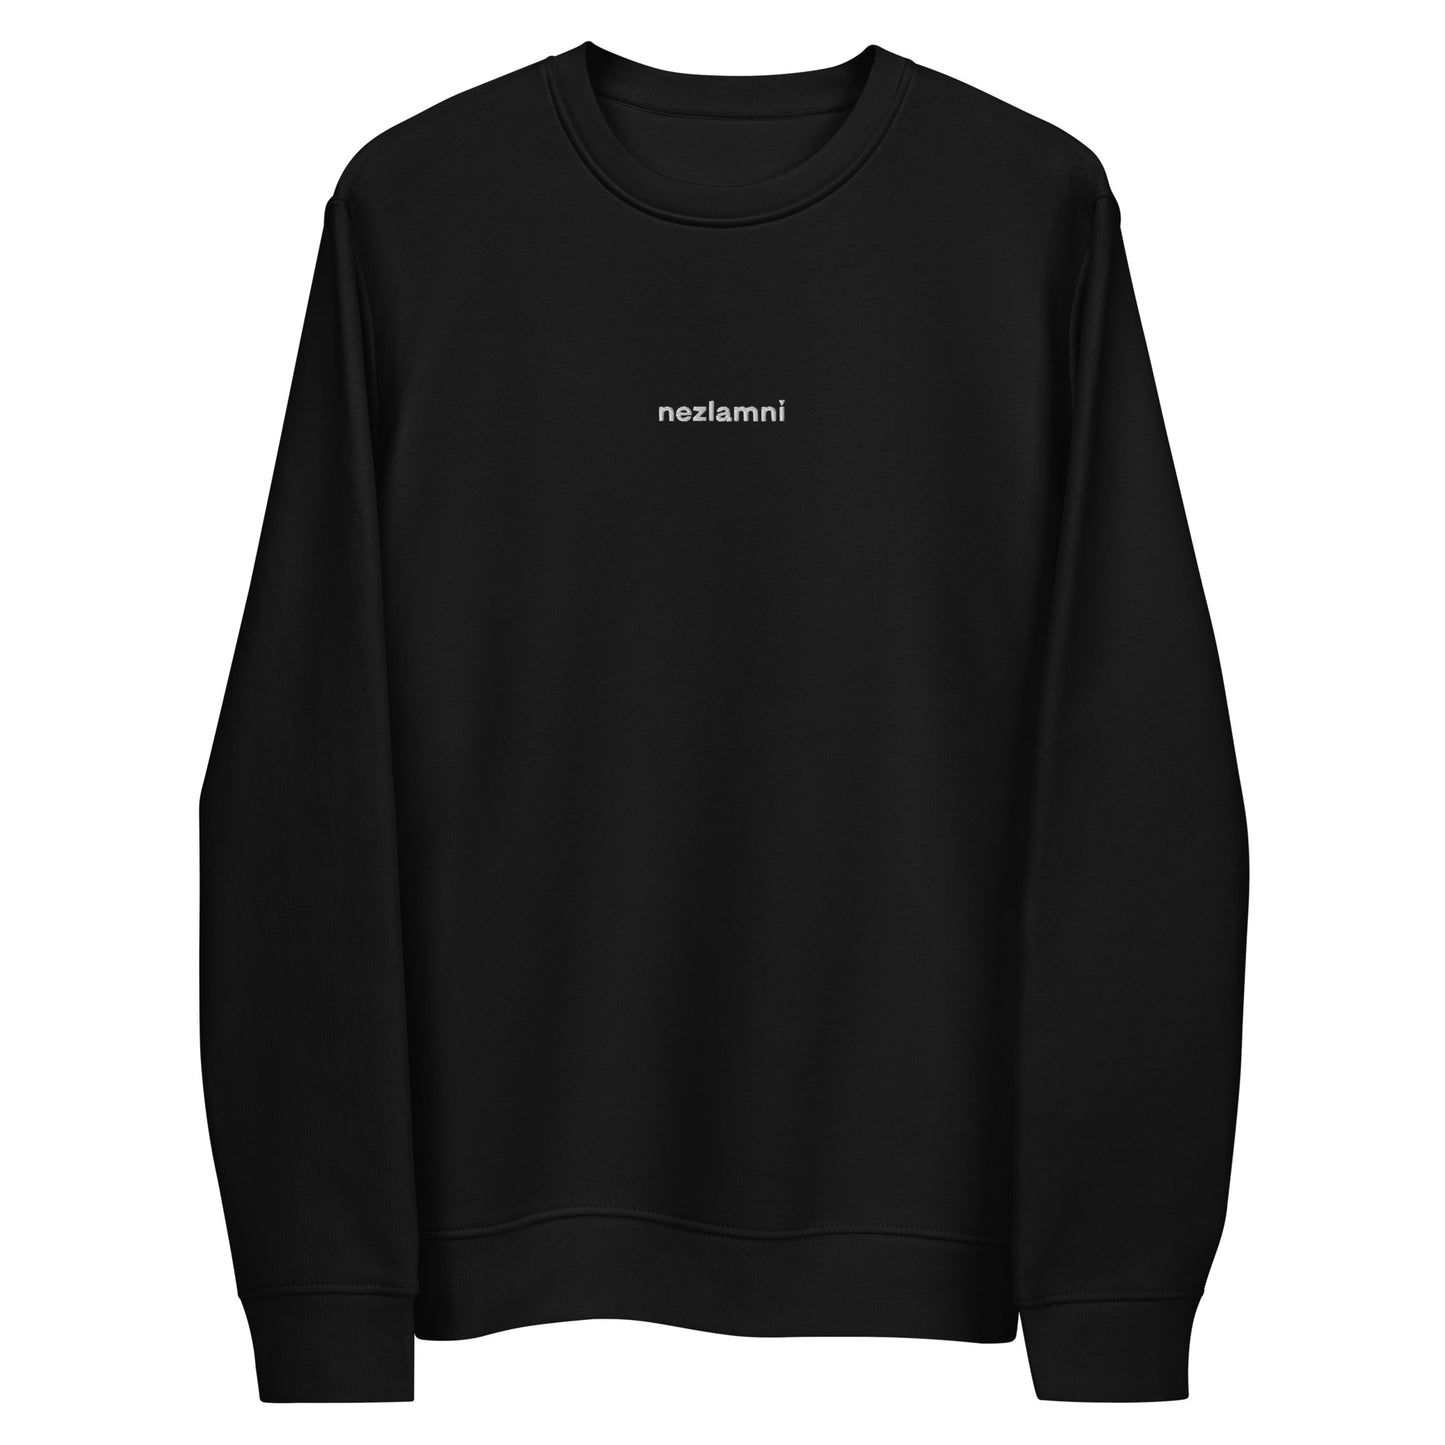 Nezlamni embroidered unisex eco sweatshirt in black